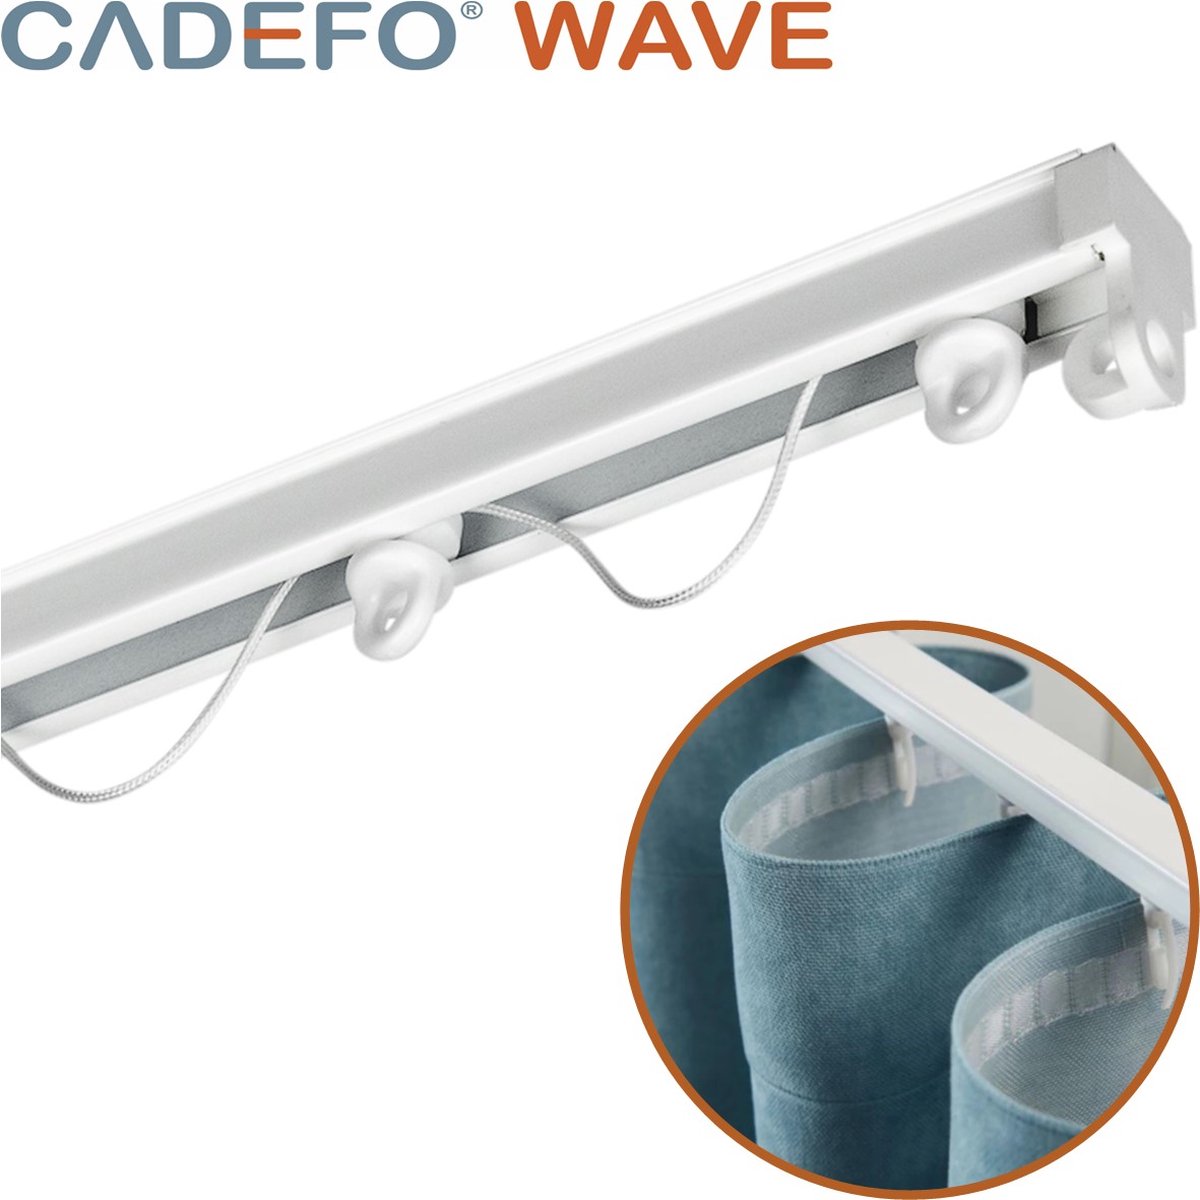 CADEFO WAVE (251 - 300 cm) Gordijnrails - Compleet op maat! - UIT 1 STUK - Leverbaar tot 6 meter - Plafondbevestiging - Lengte 269 cm